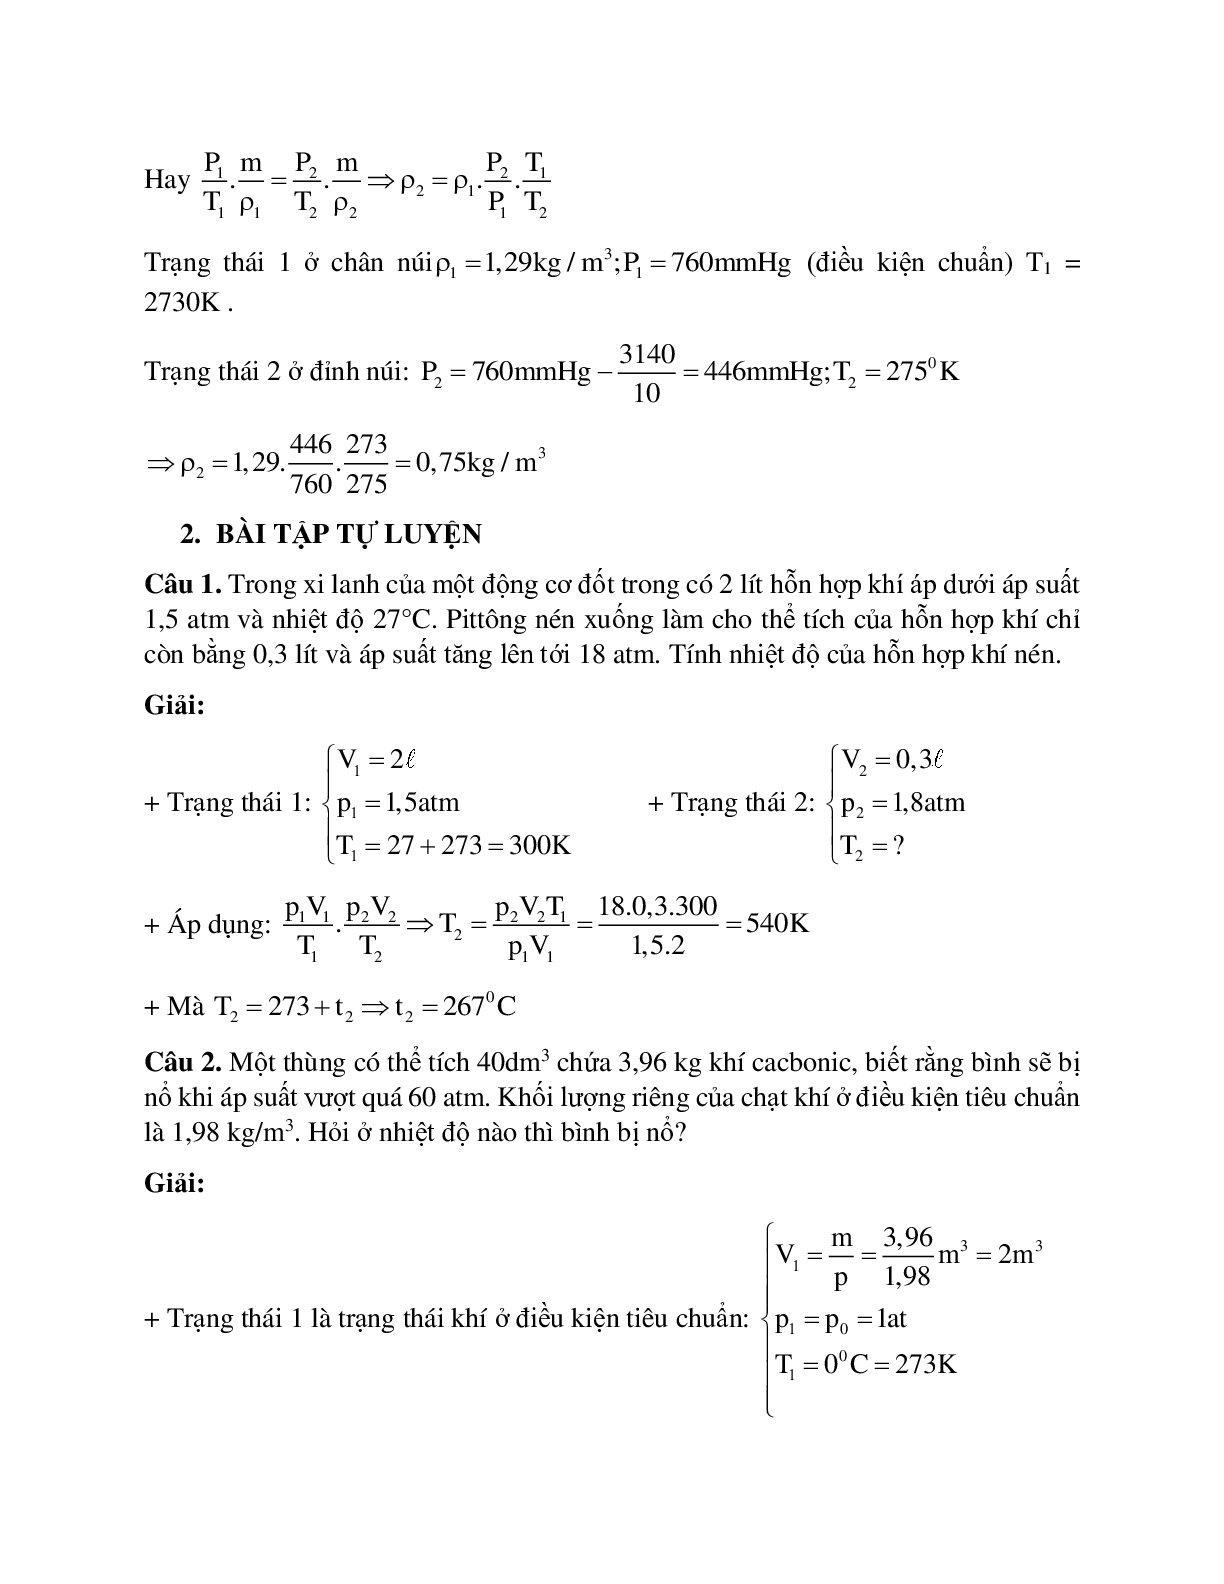 Bài tập về phương trình trạng thái khí lý tưởng có lời giải (trang 3)